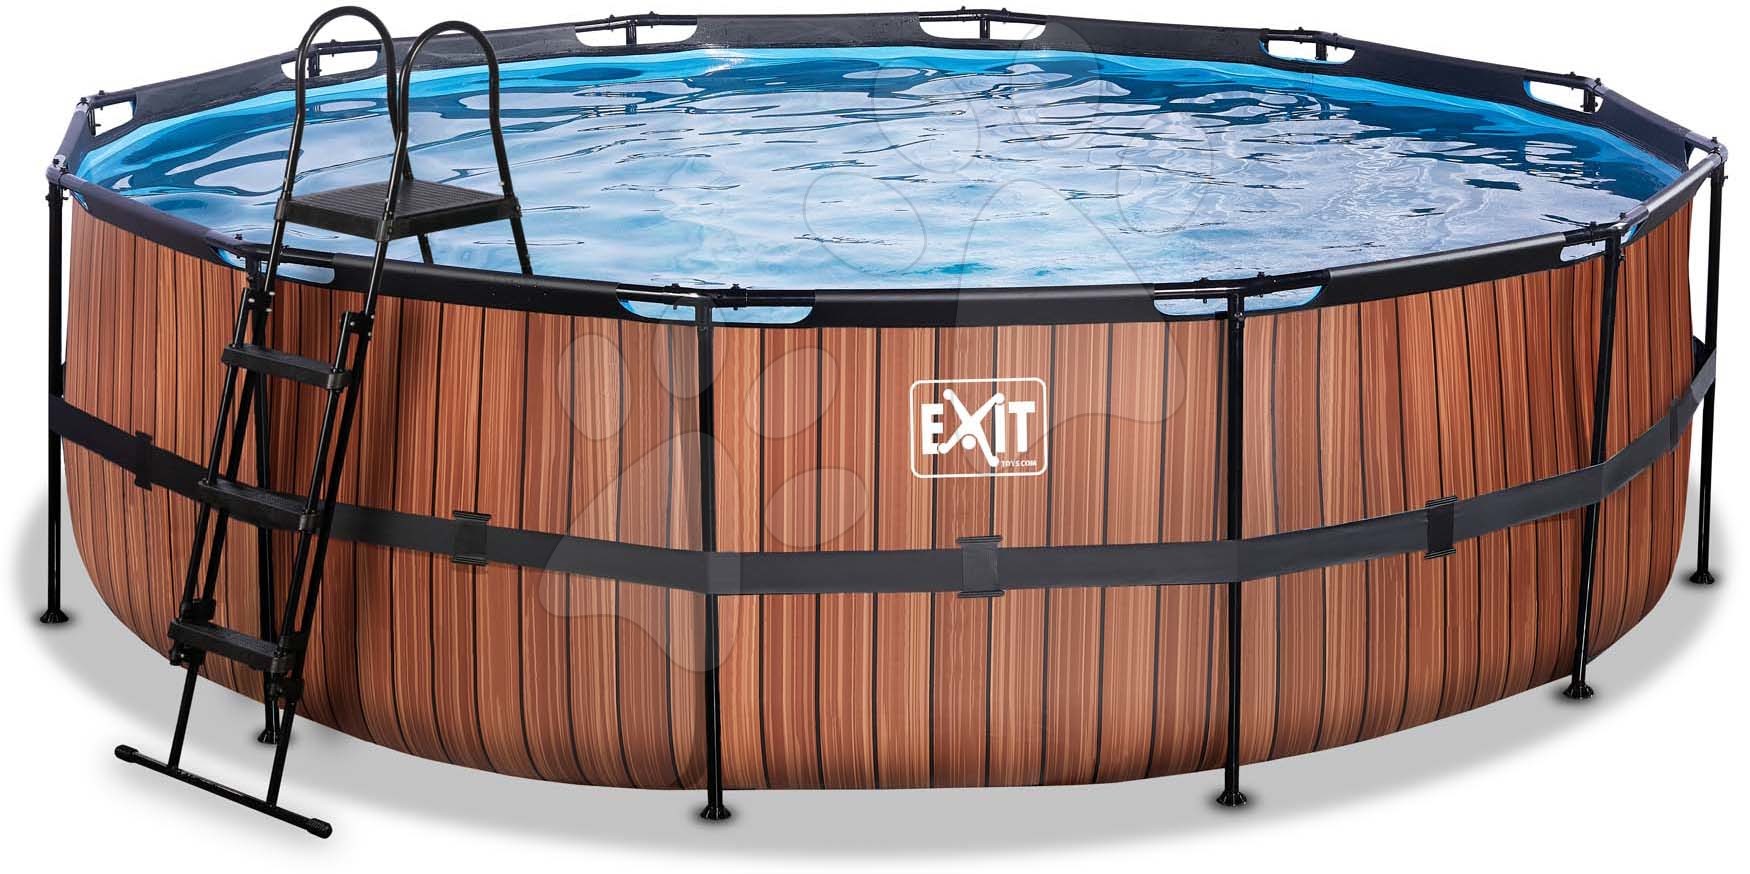 Medence homokszűrős vízforgatóval Wood pool Exit Toys kerek acél medencekeret 488*122 cm barna 6 évtől